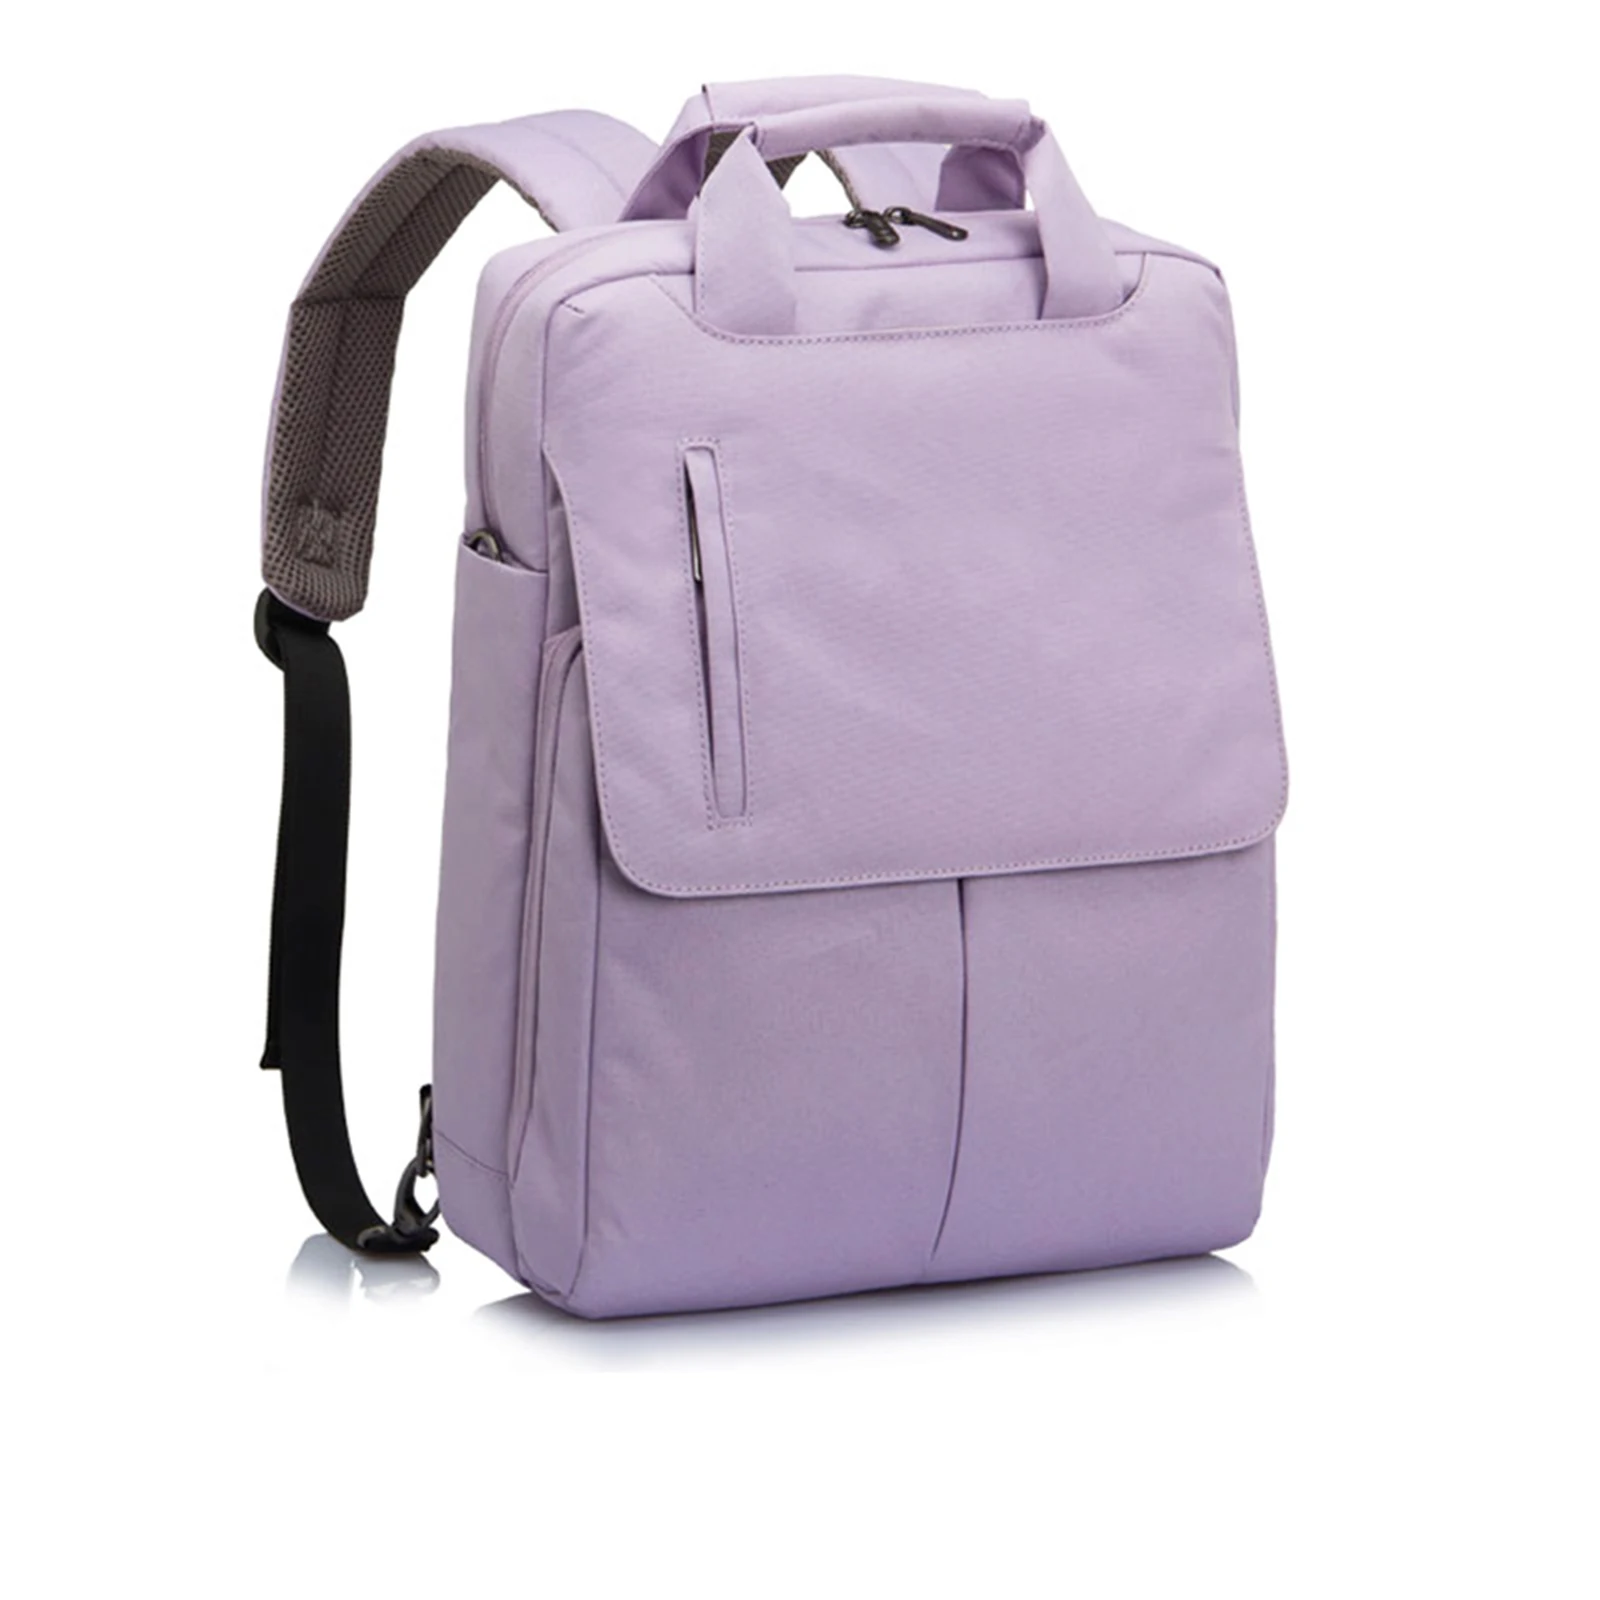 

Модный рюкзак для ноутбука Double 11, Ударопрочная Водонепроницаемая сумка из ткани Оксфорд премиум-класса для ноутбука 13/14/15 дюймов и